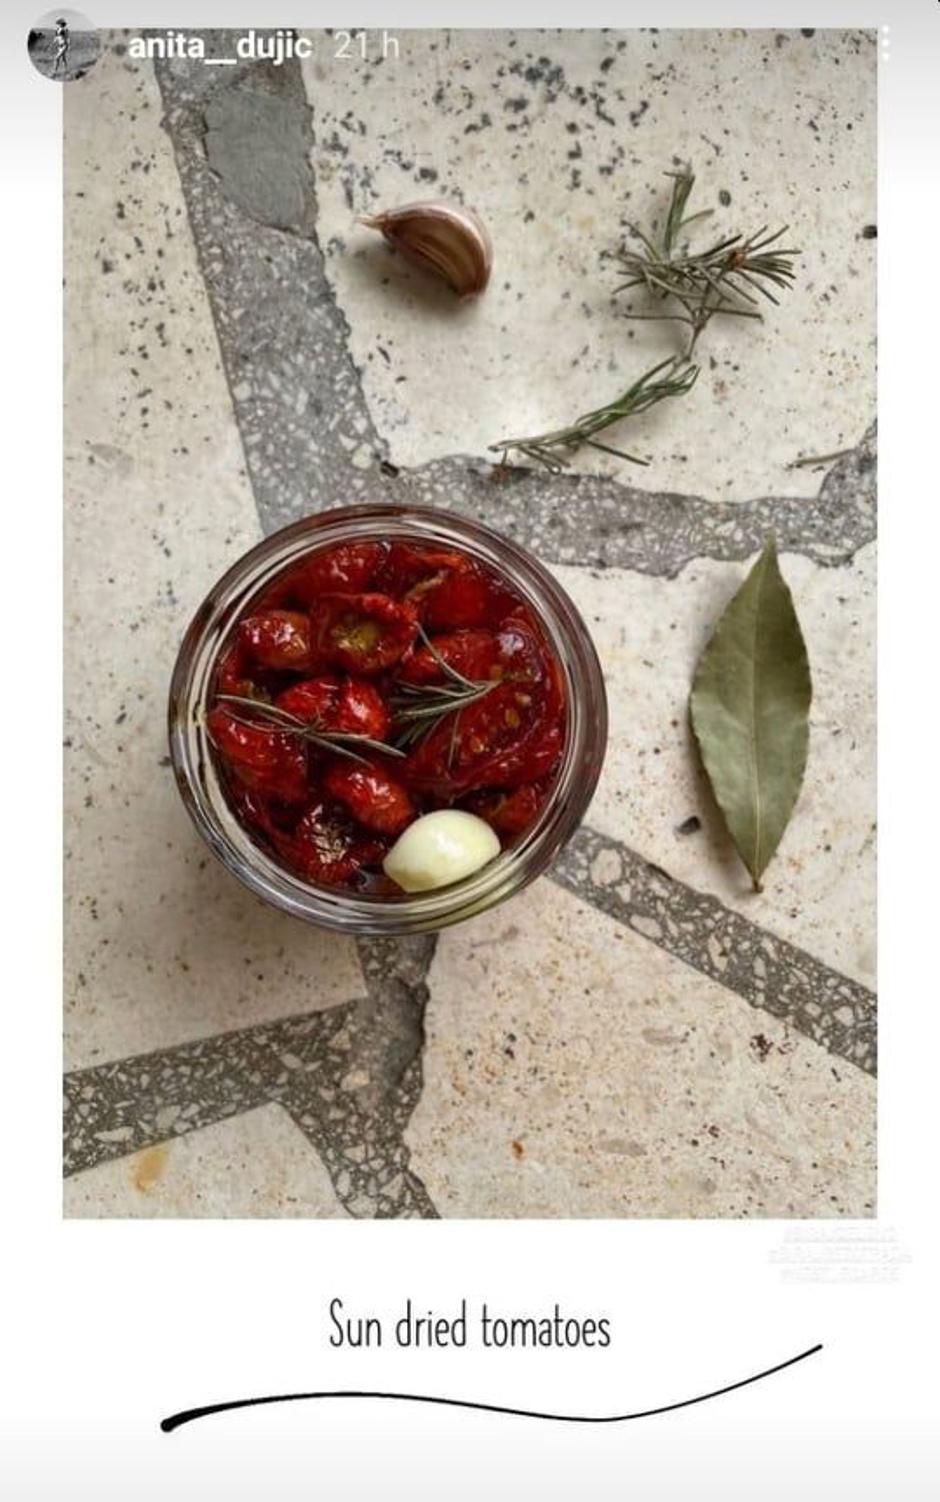 Sušene rajčice u staklenci prema receptu Anite Dujić | Autor: Instagram@lejla.fili